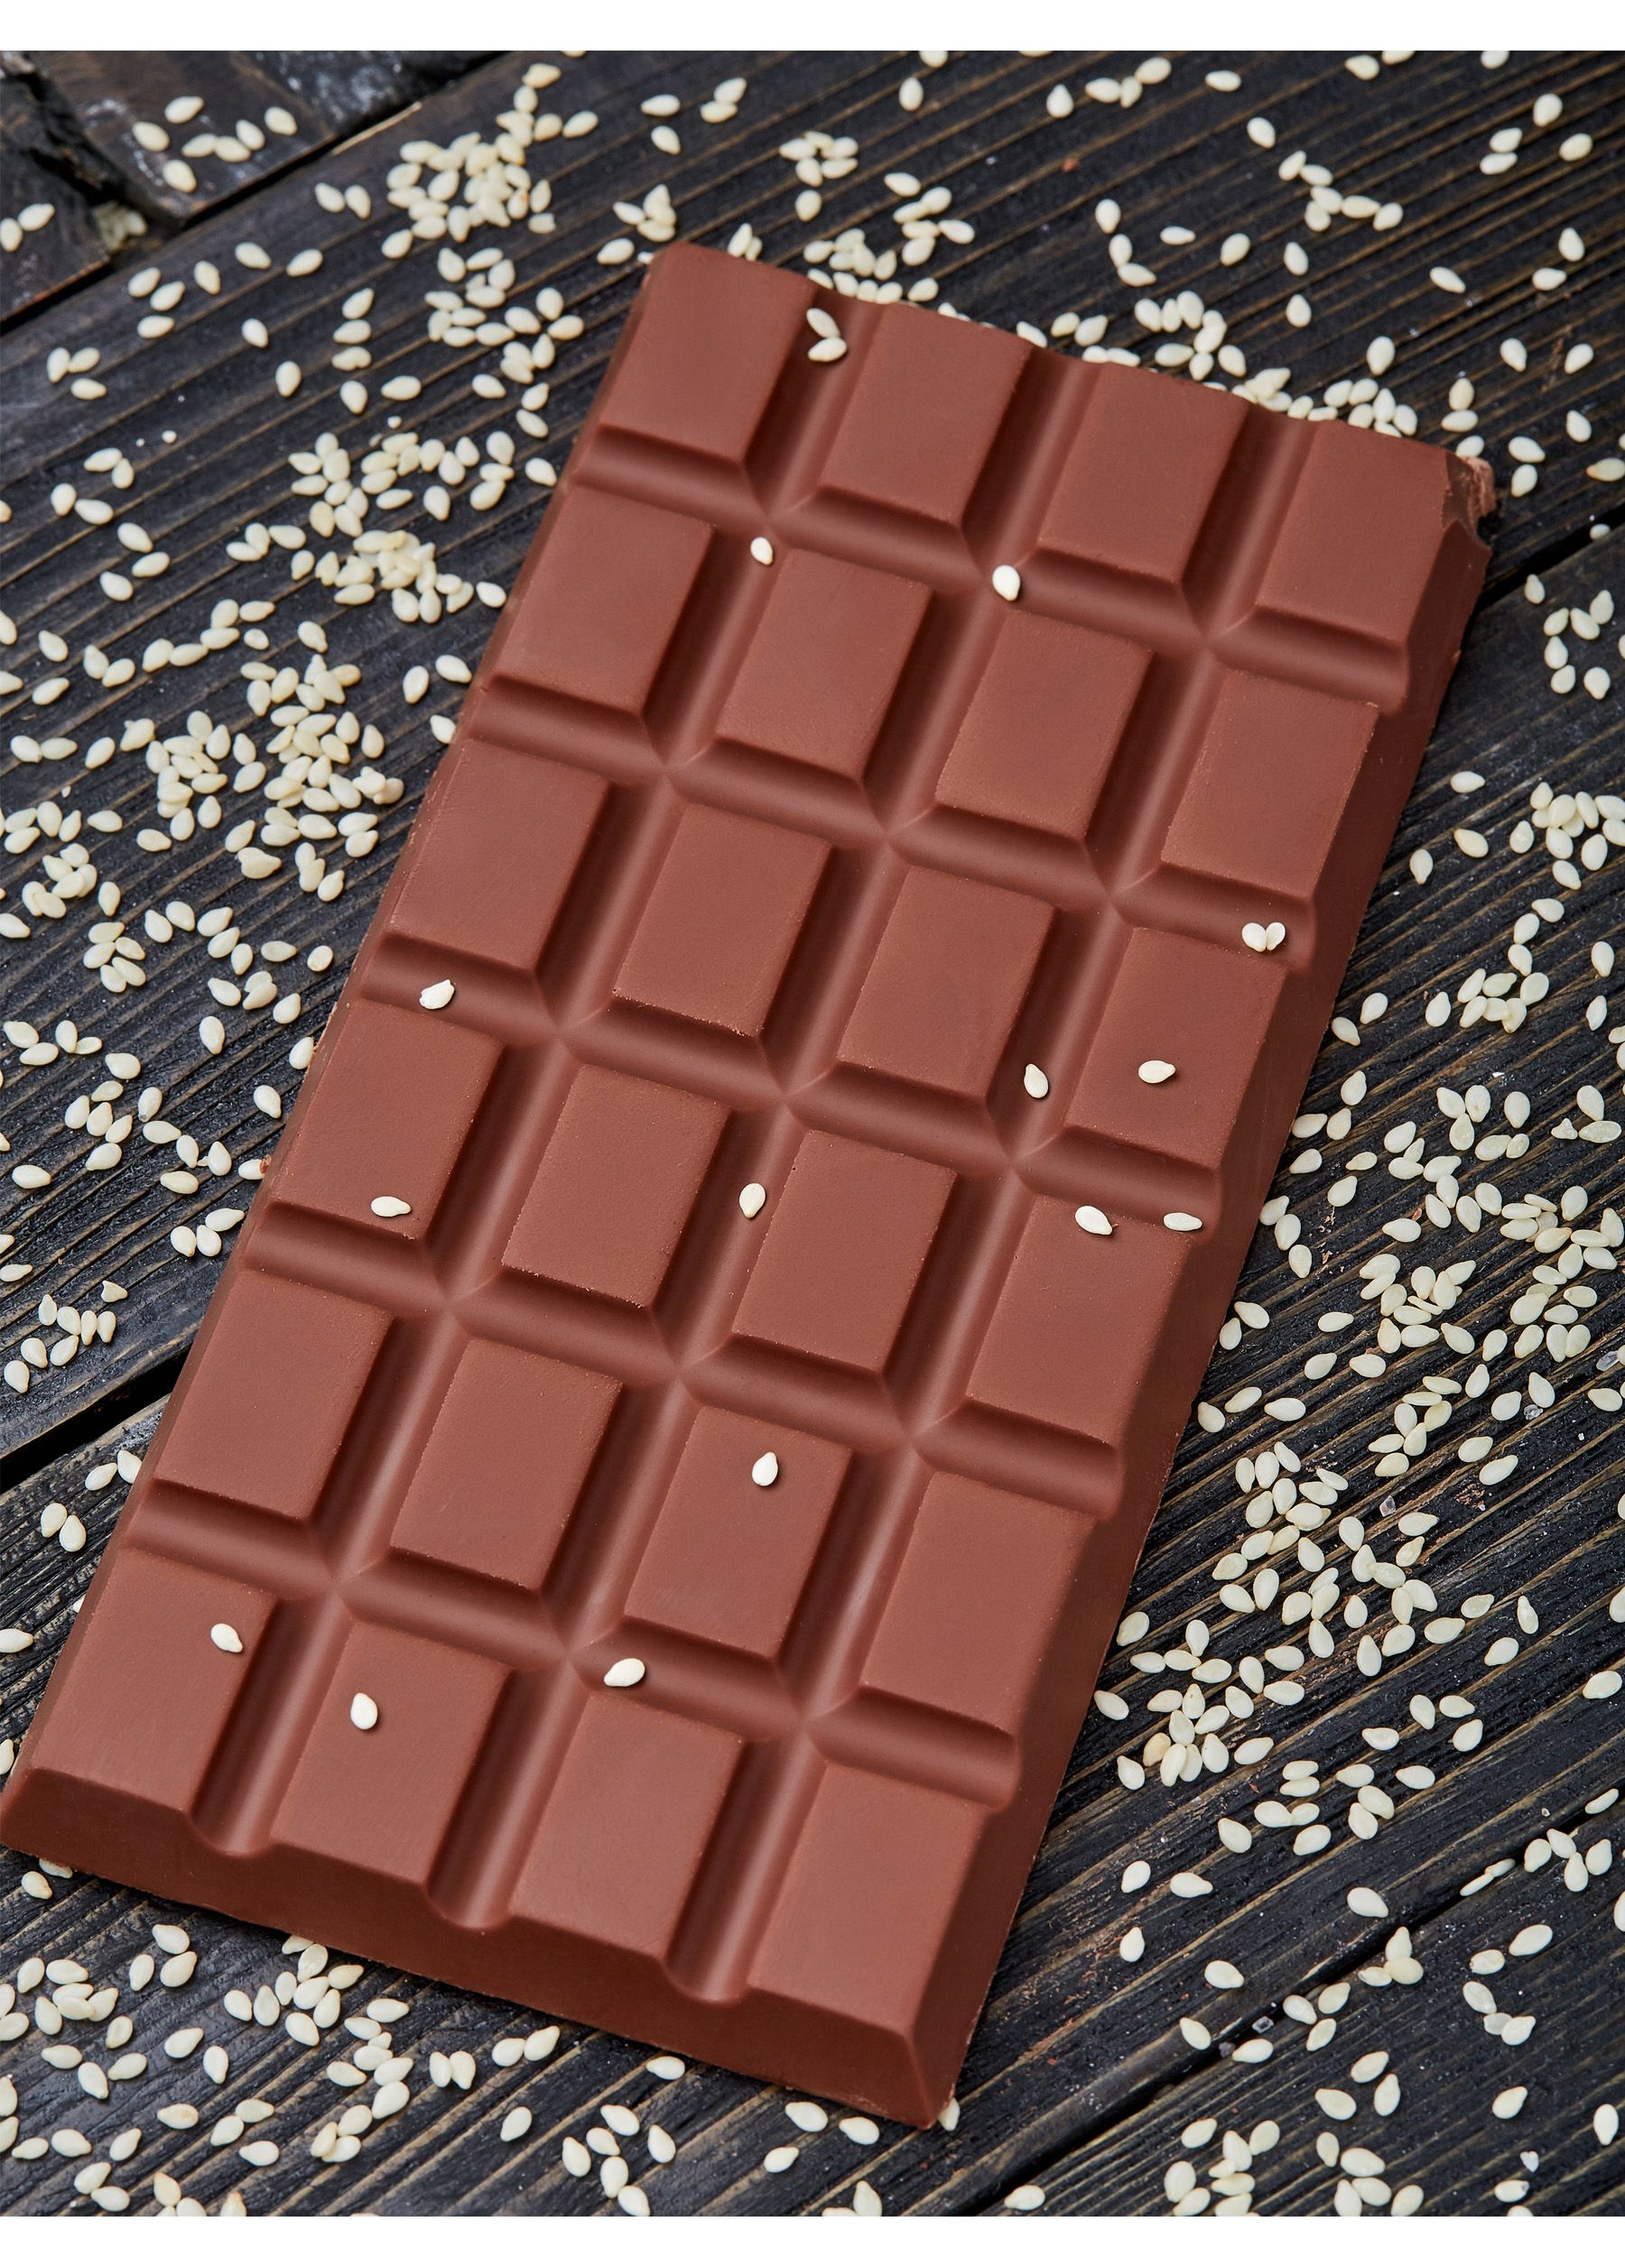 Домашняя плитка шоколада. Шоколад плитка 4life. Плитки шоколада с БТС. Шоколадная плитка.